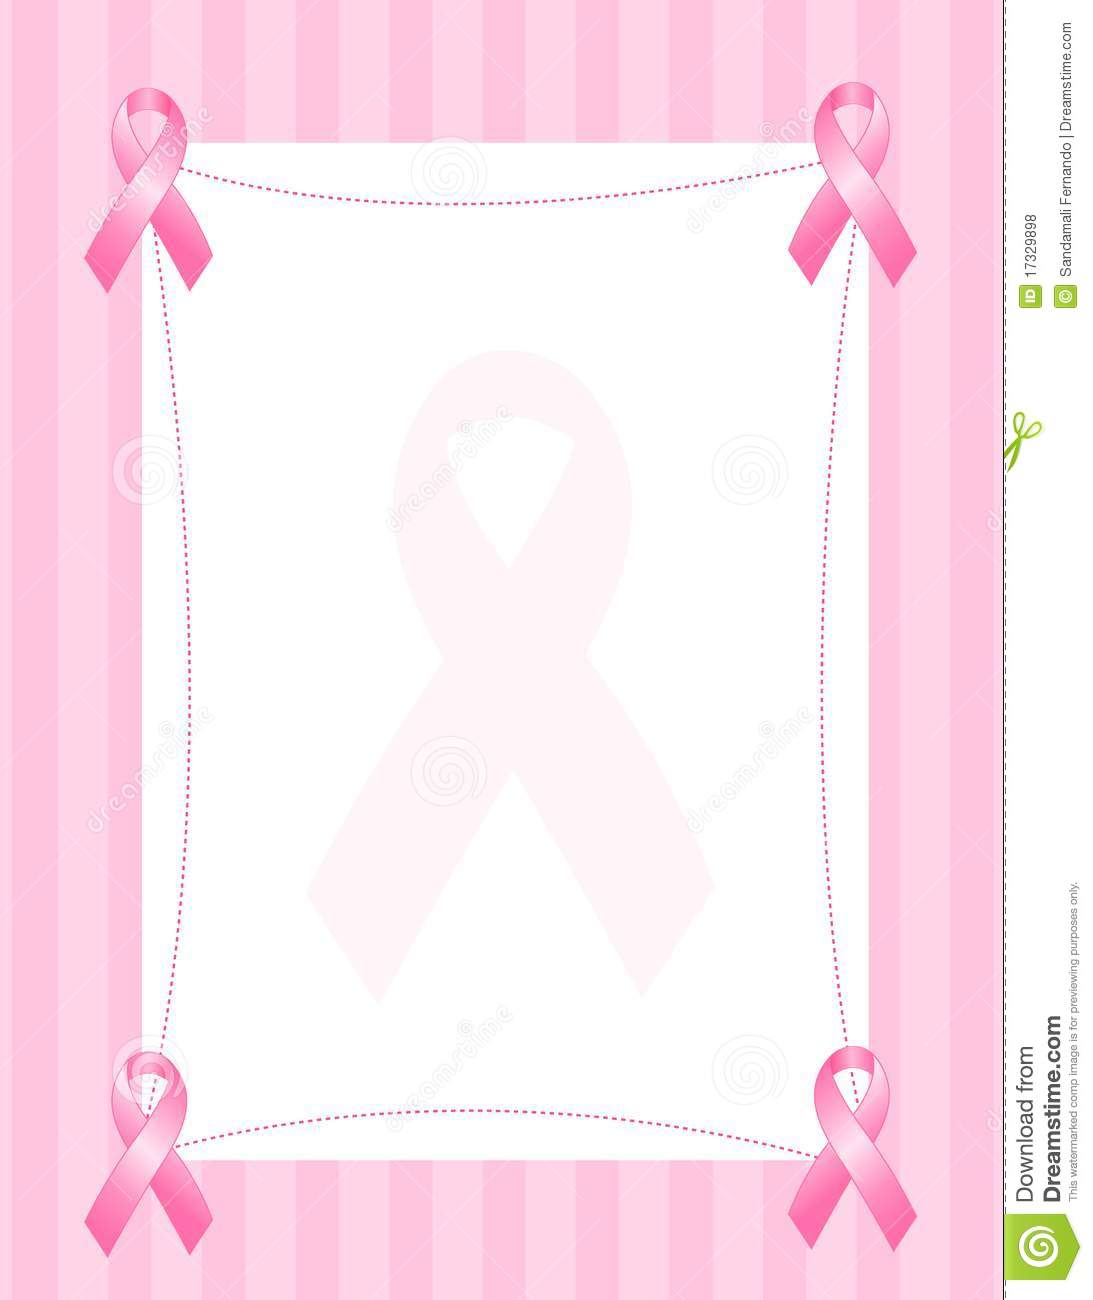 Free Heart Clipart Made Pics Of Pink Ribbons Pink Ribbon Border